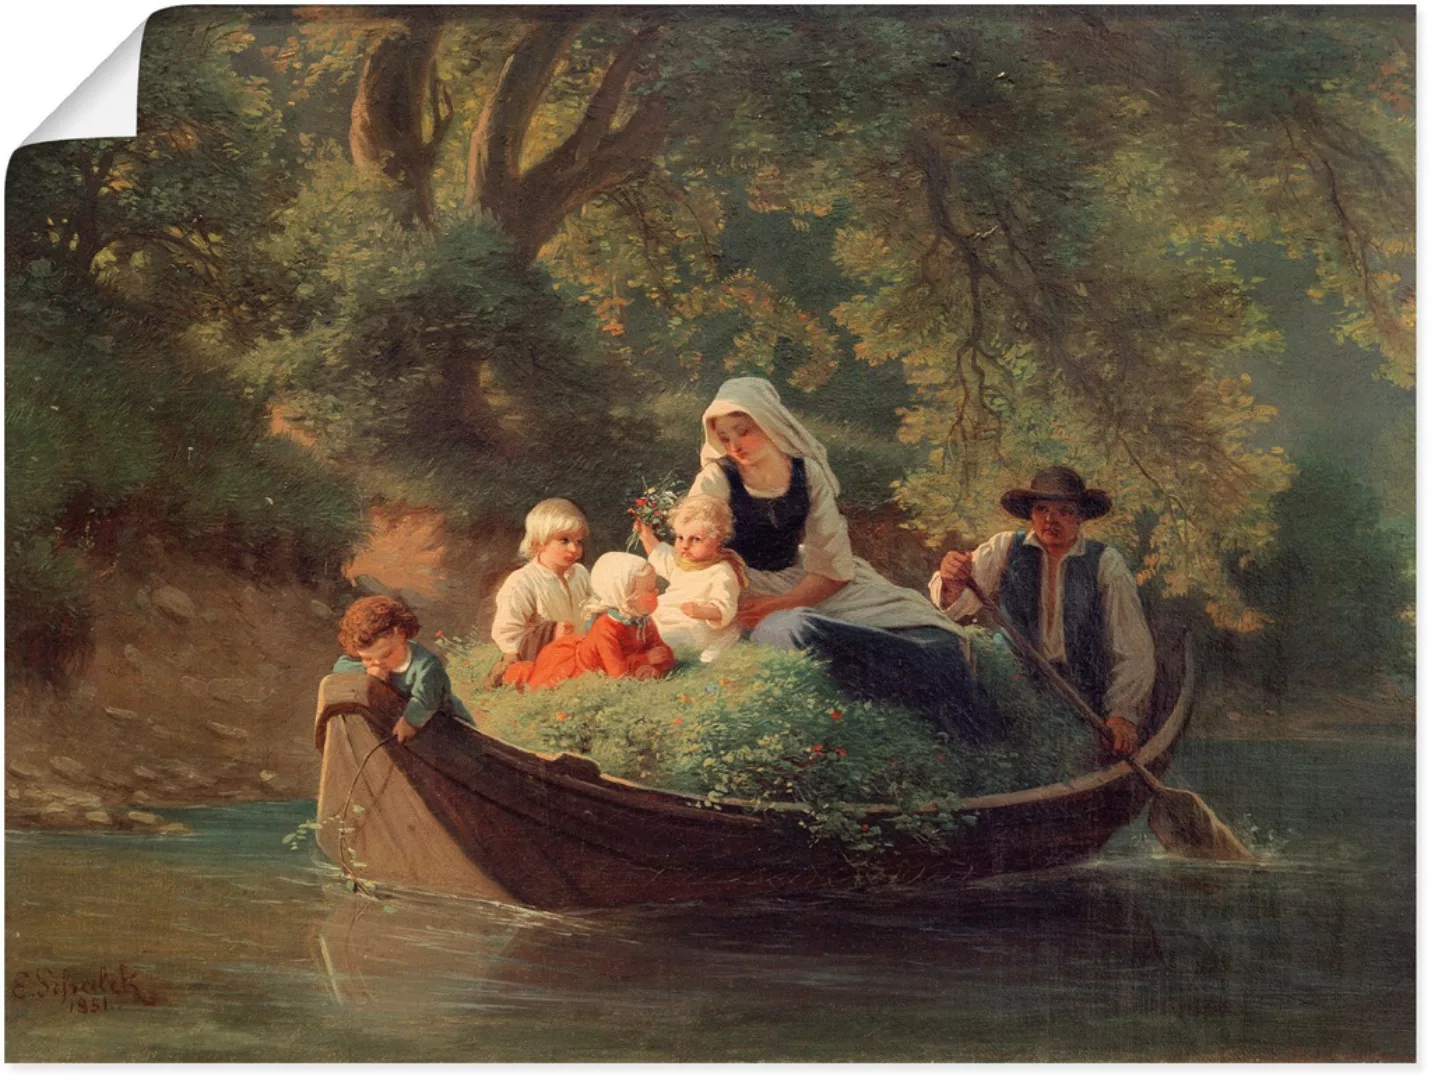 Artland Wandbild "Bauernfamilie in einem Boot", Gruppen & Familien, (1 St.) günstig online kaufen